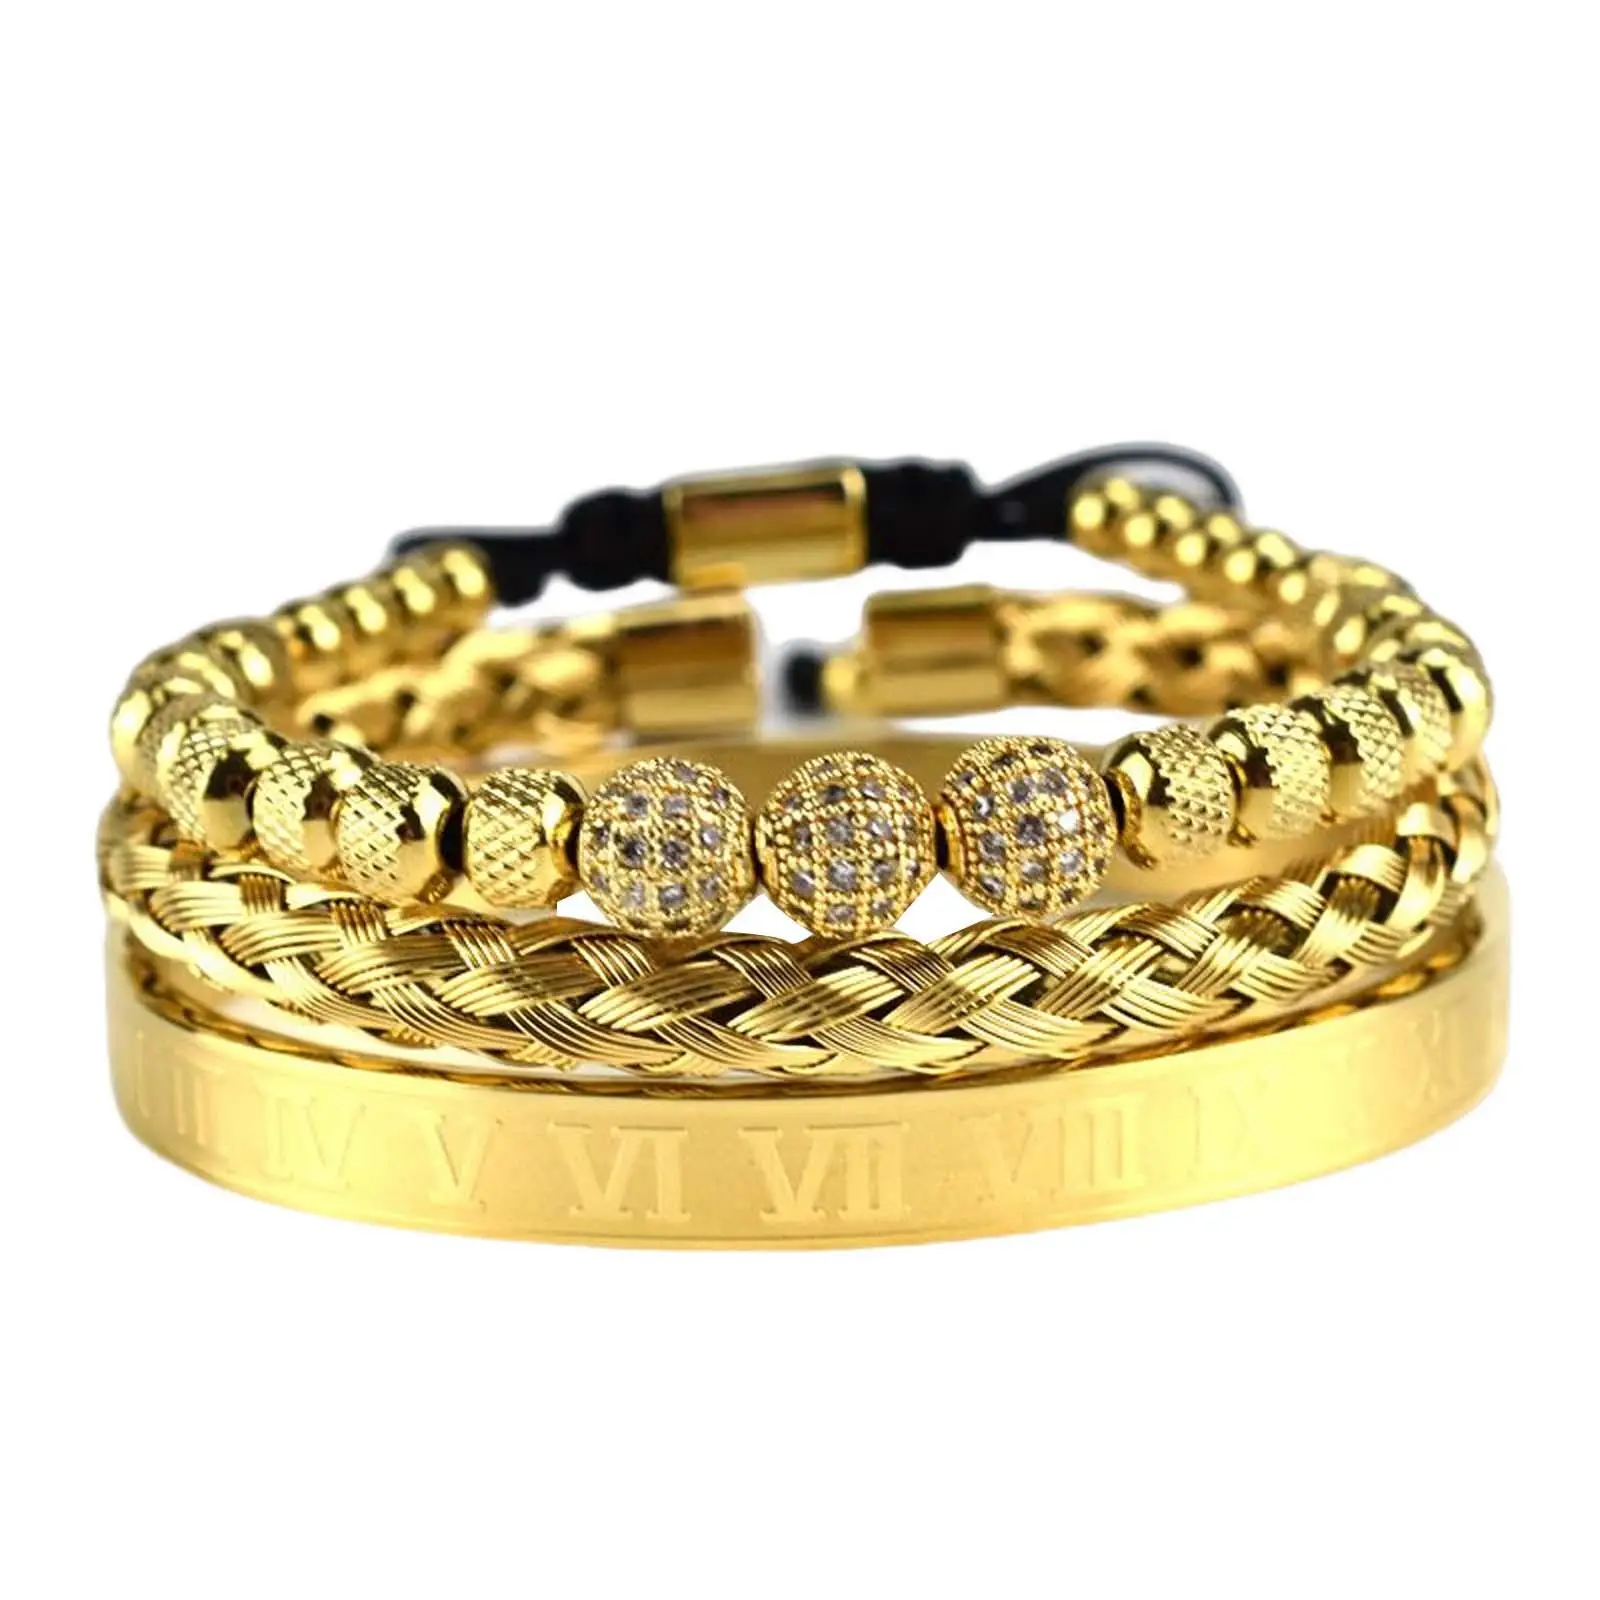 Braided Bracelet Set 18cm~19cm Bangle Woven Cuff Wrap Bracelet Width 8mm Beaded Jewelry Accessory Wristbands Women & Men